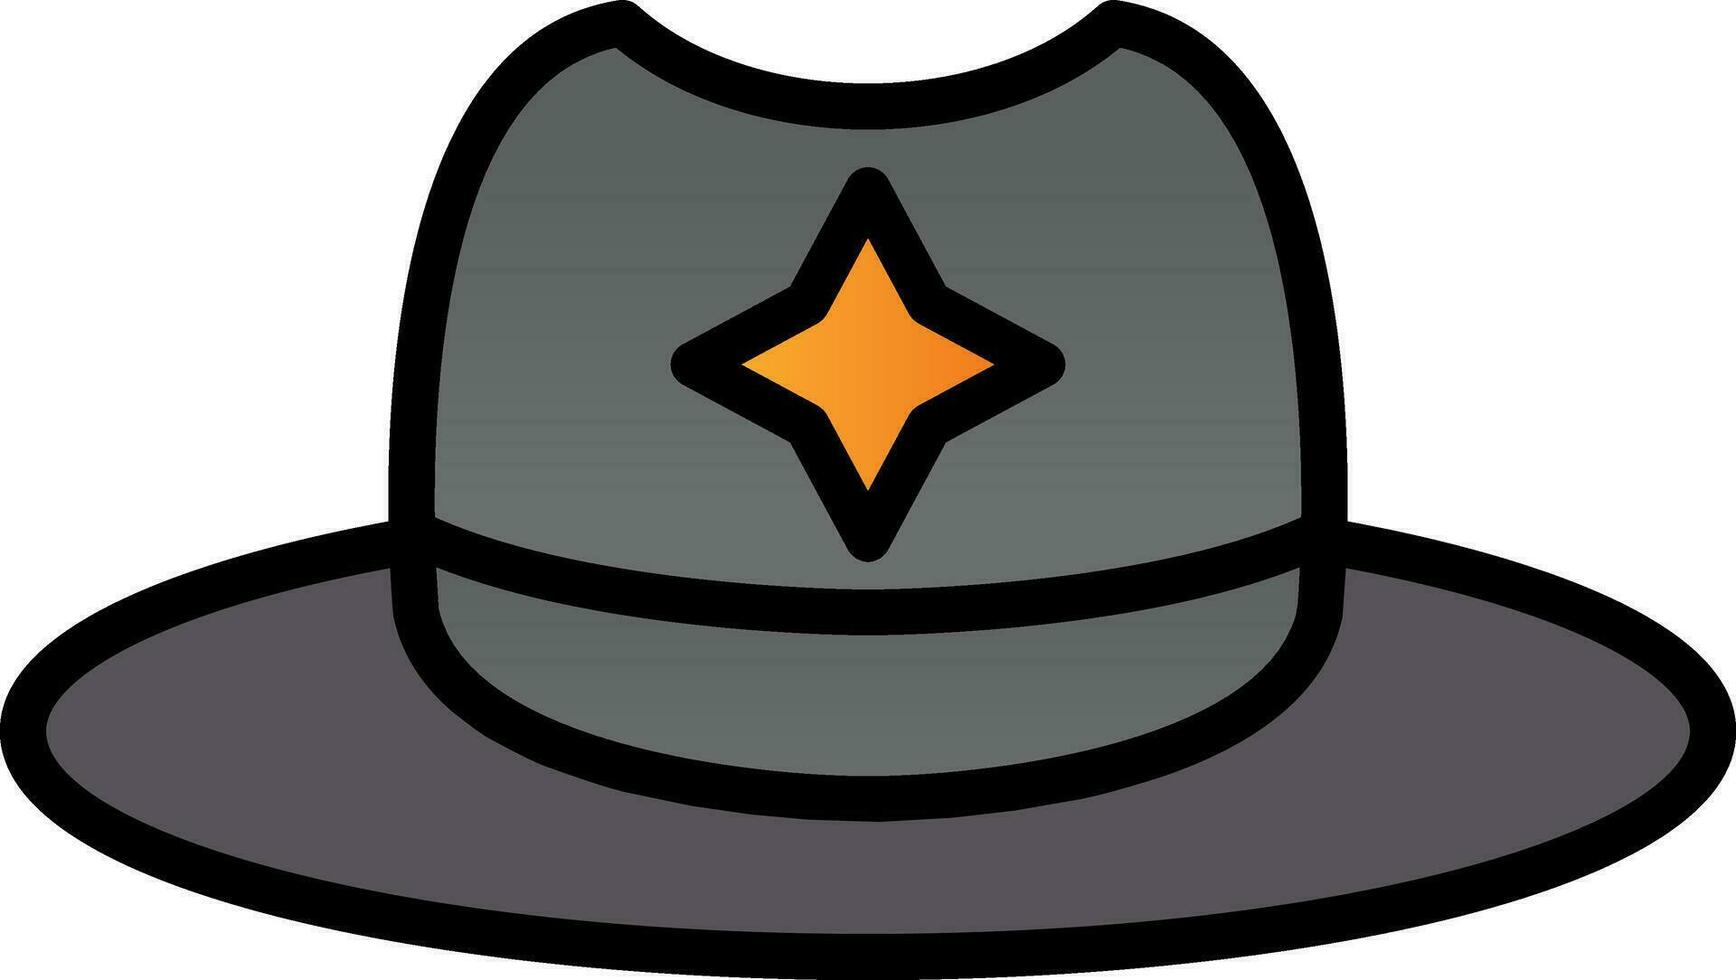 hoed vector icoon ontwerp